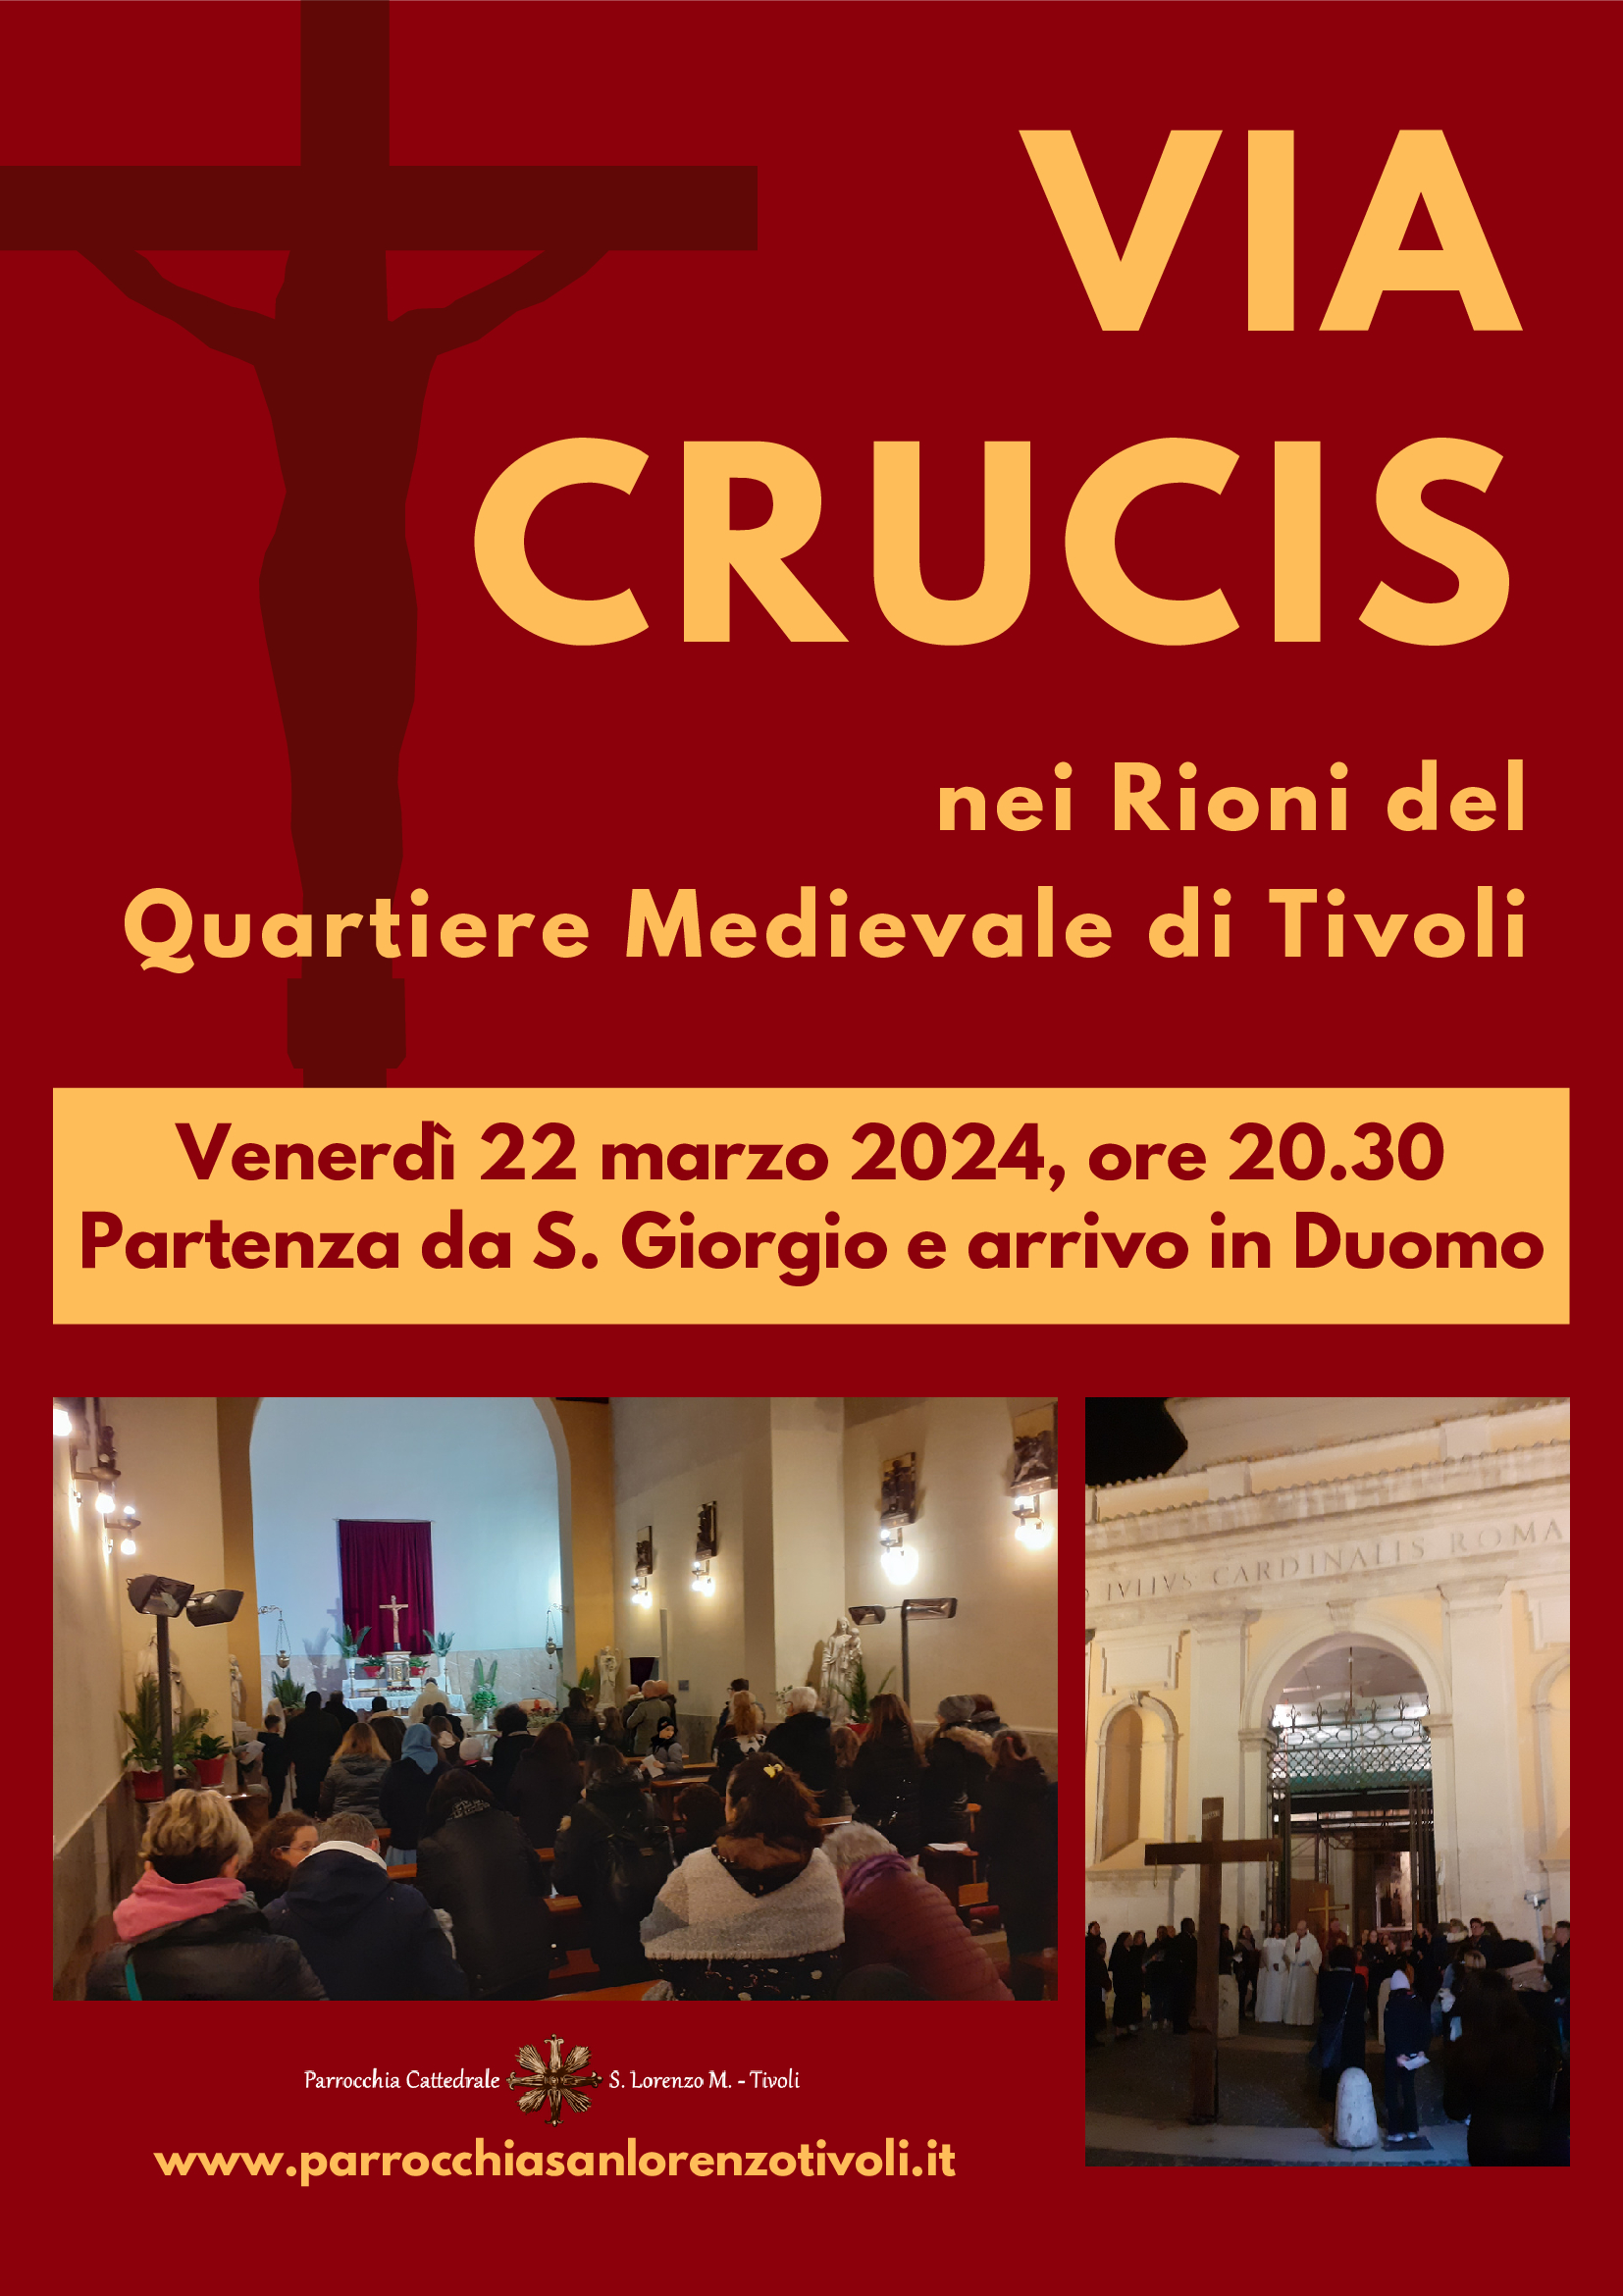 Via Crucis delle parrocchie San Lorenzo e San Giorgio venerdì 22 marzo 2024